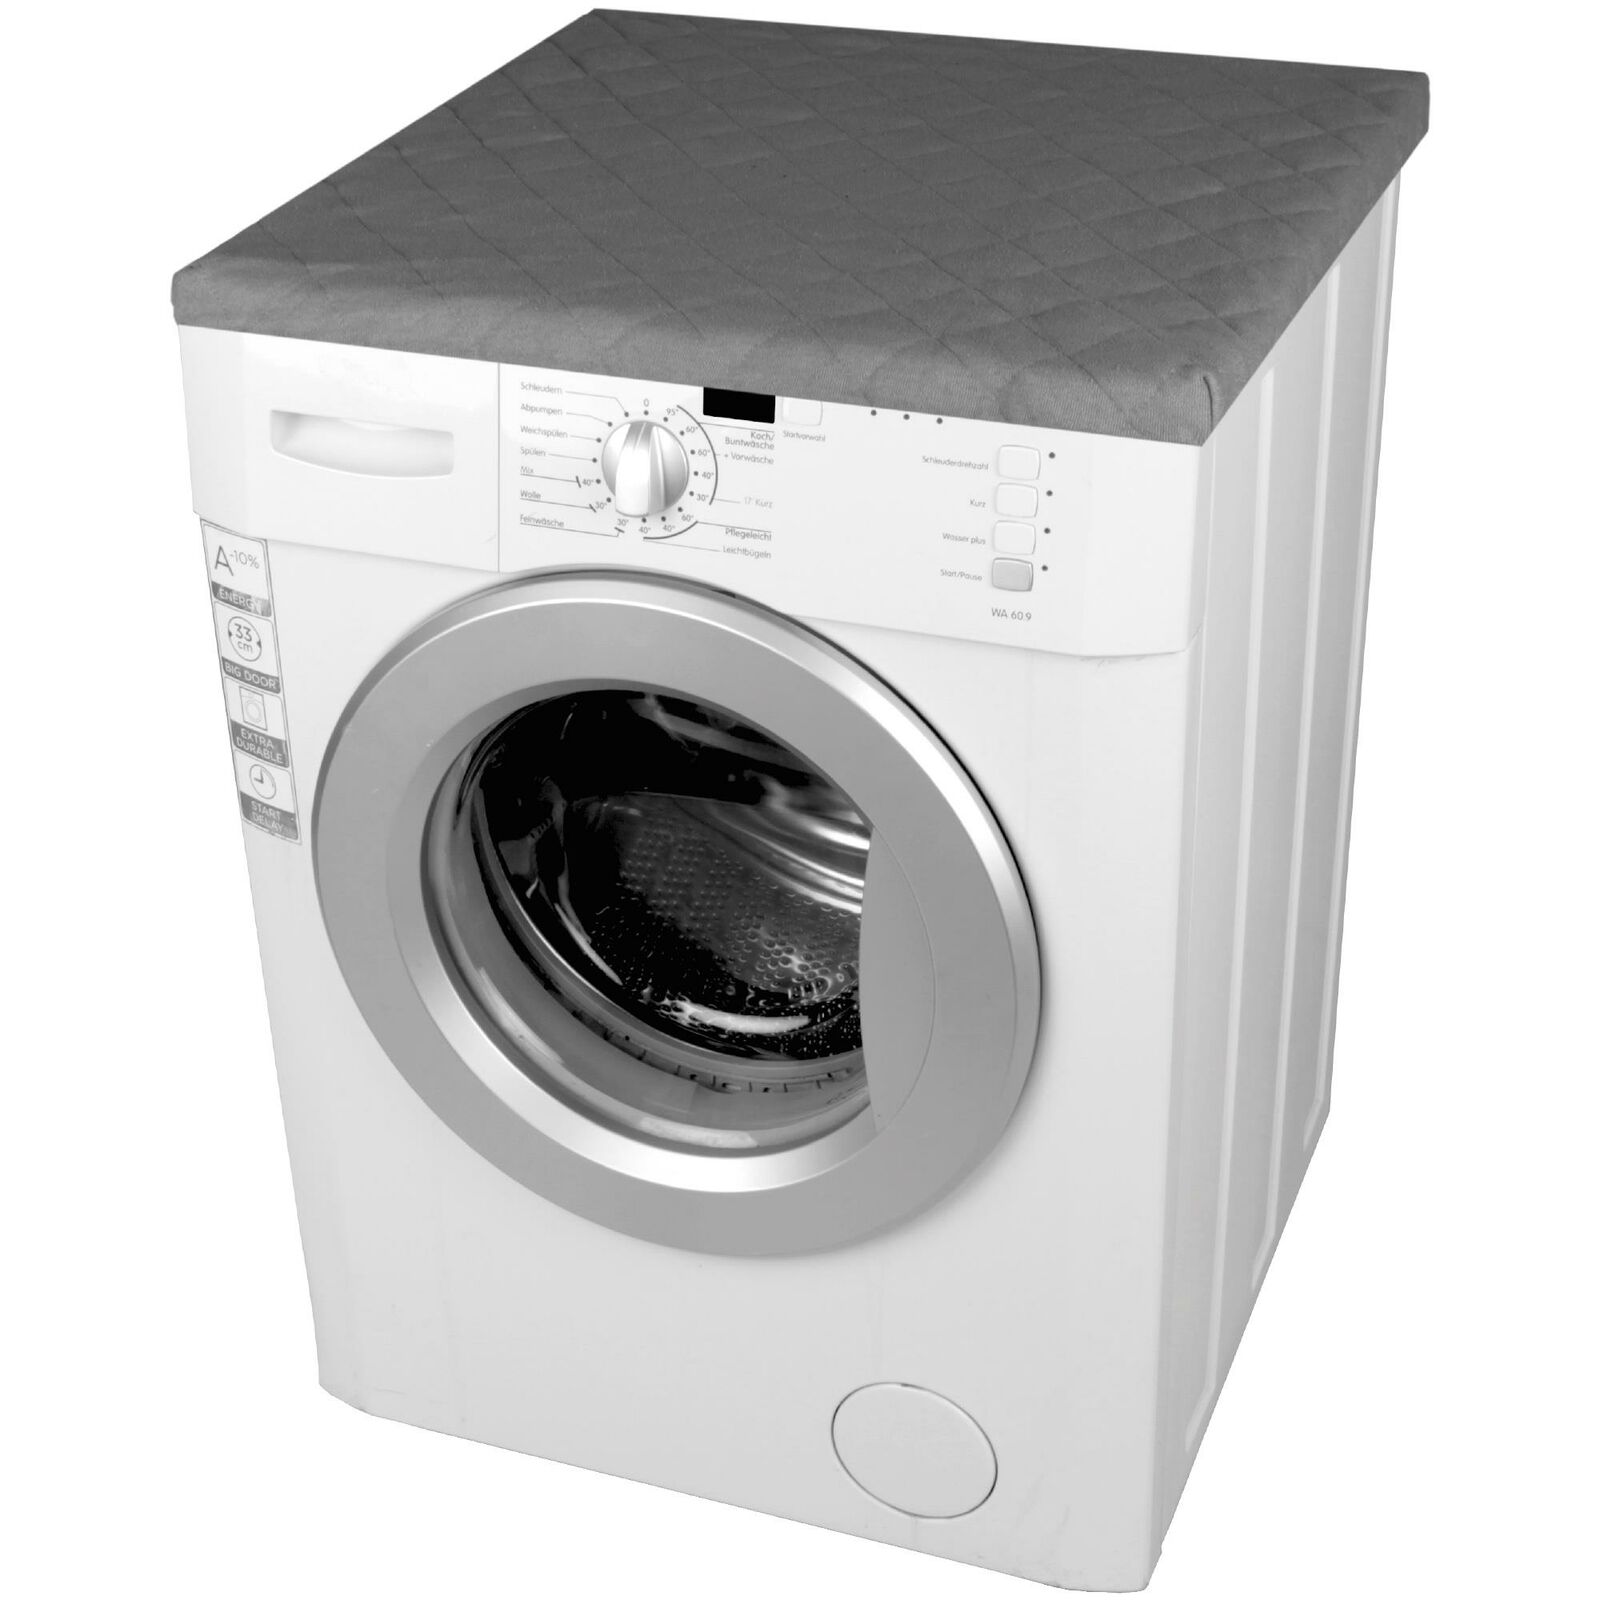 Waschmaschinenbezug 60x60cm Trockner Schonbezug Abdeckung Überzug Waschmaschine